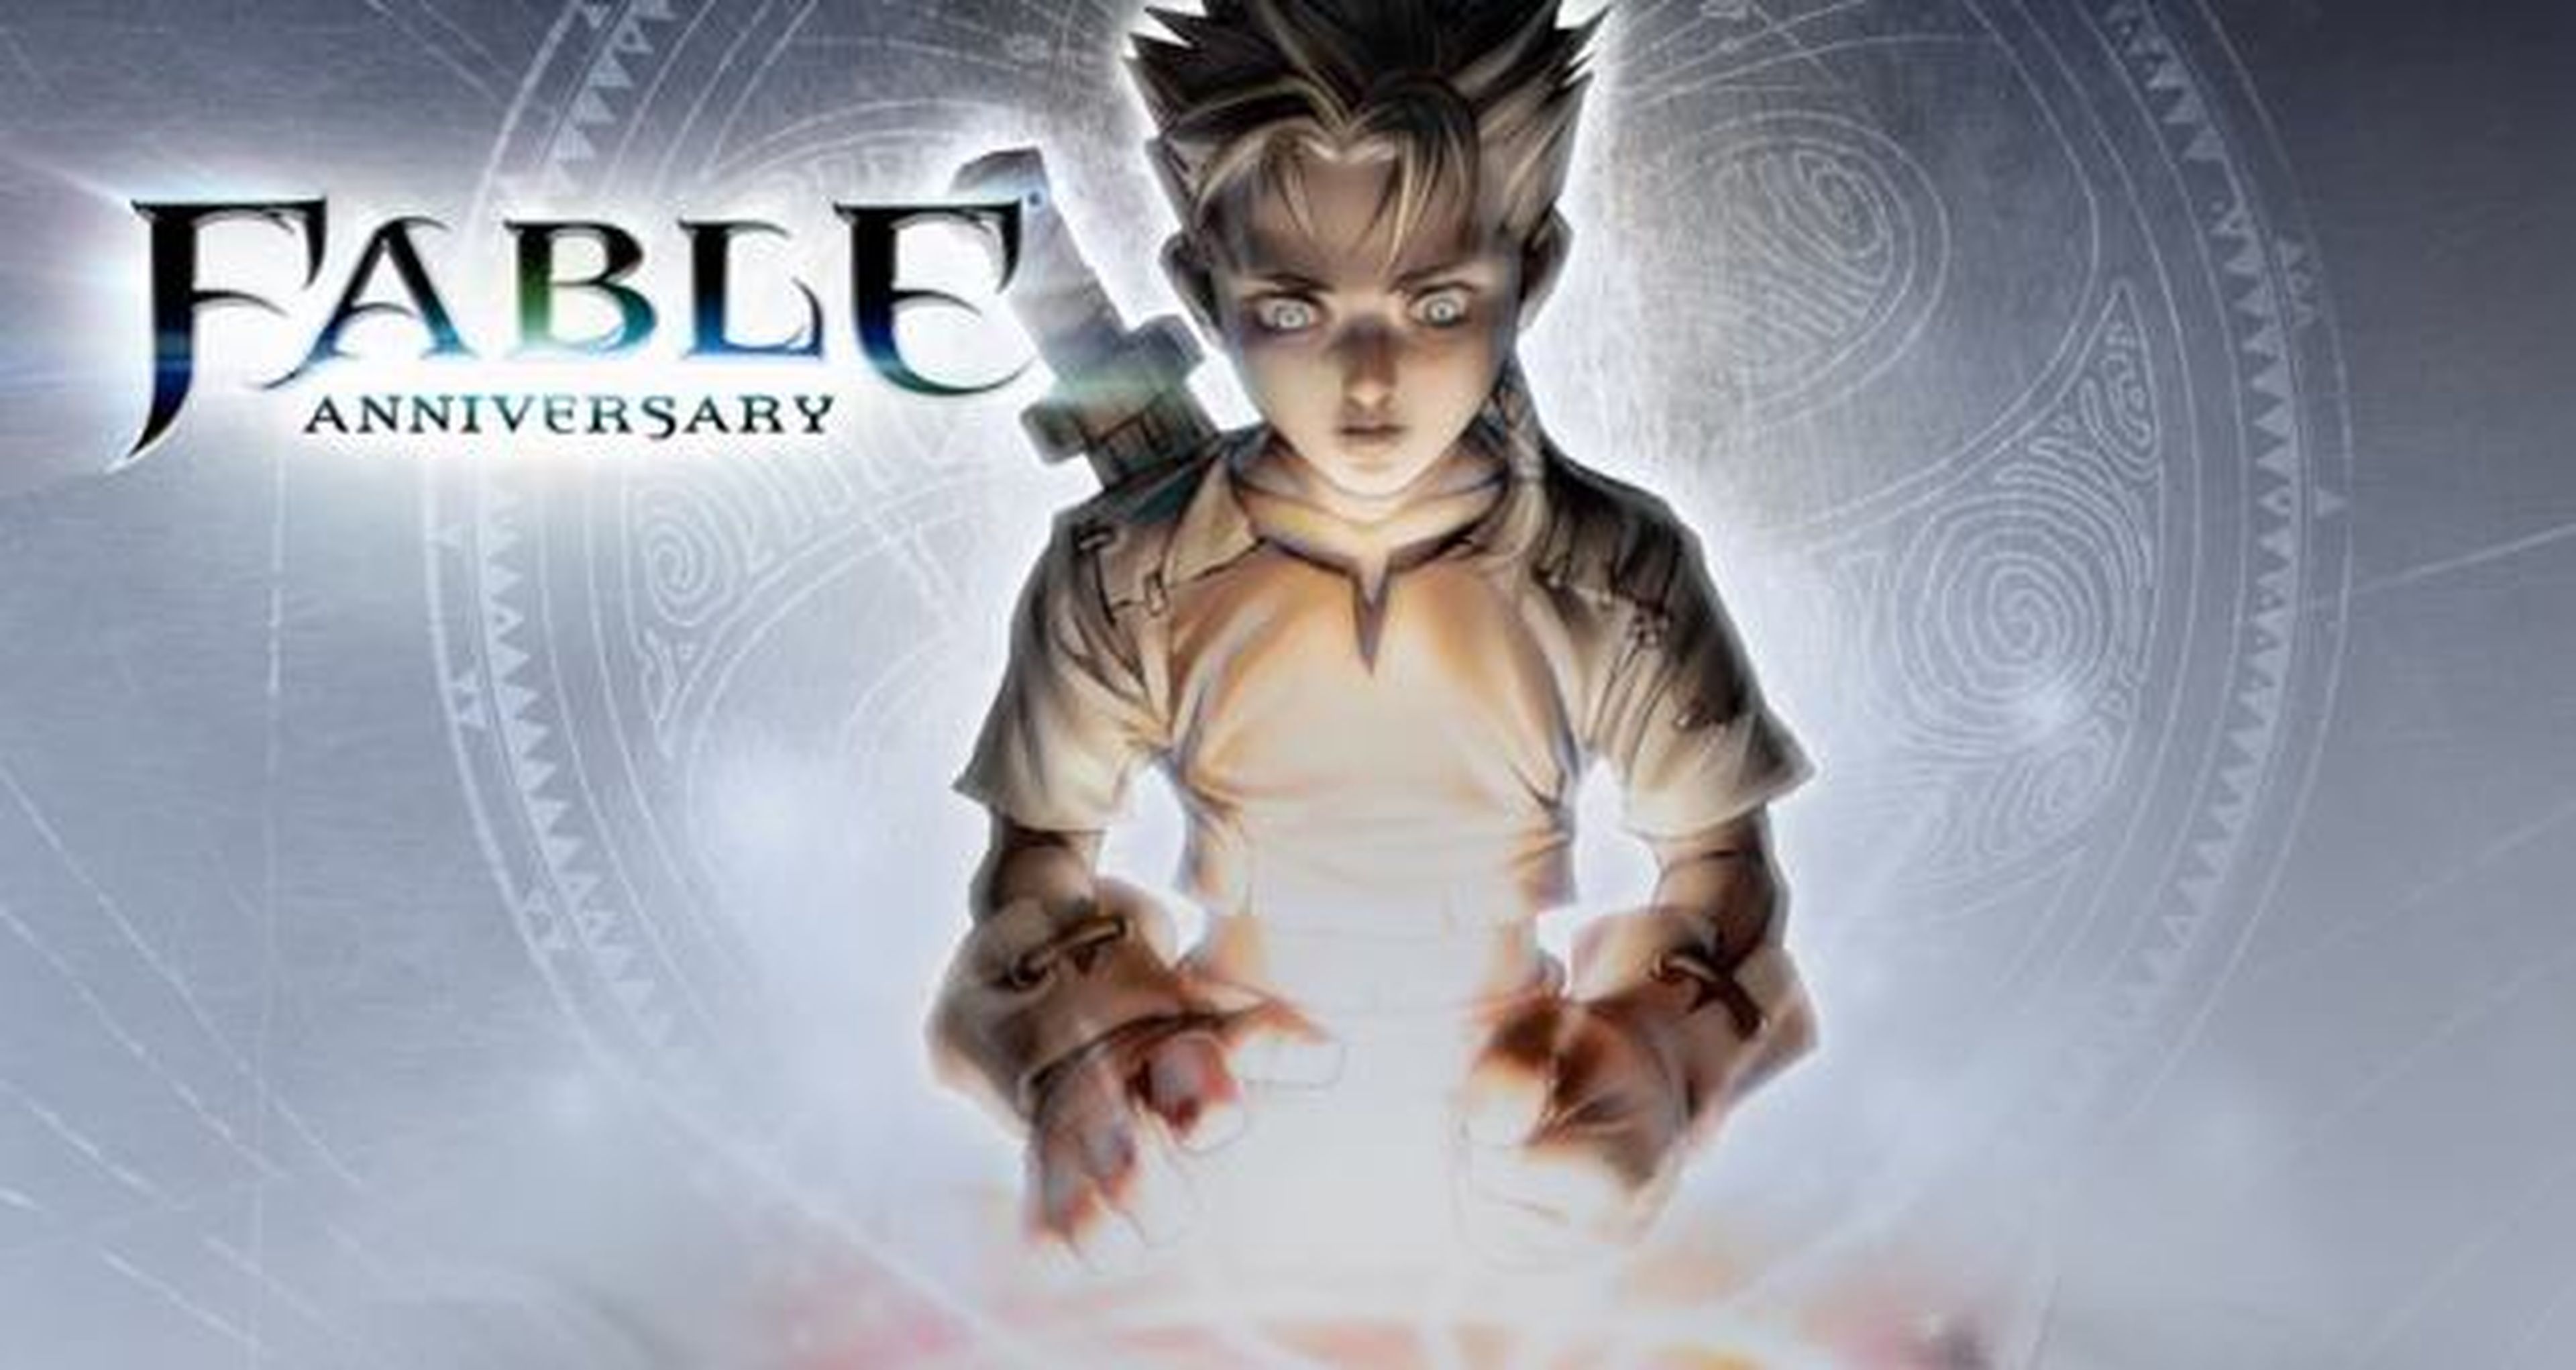 Fable Trilogy, un pack anunciado para el 7 de febrero